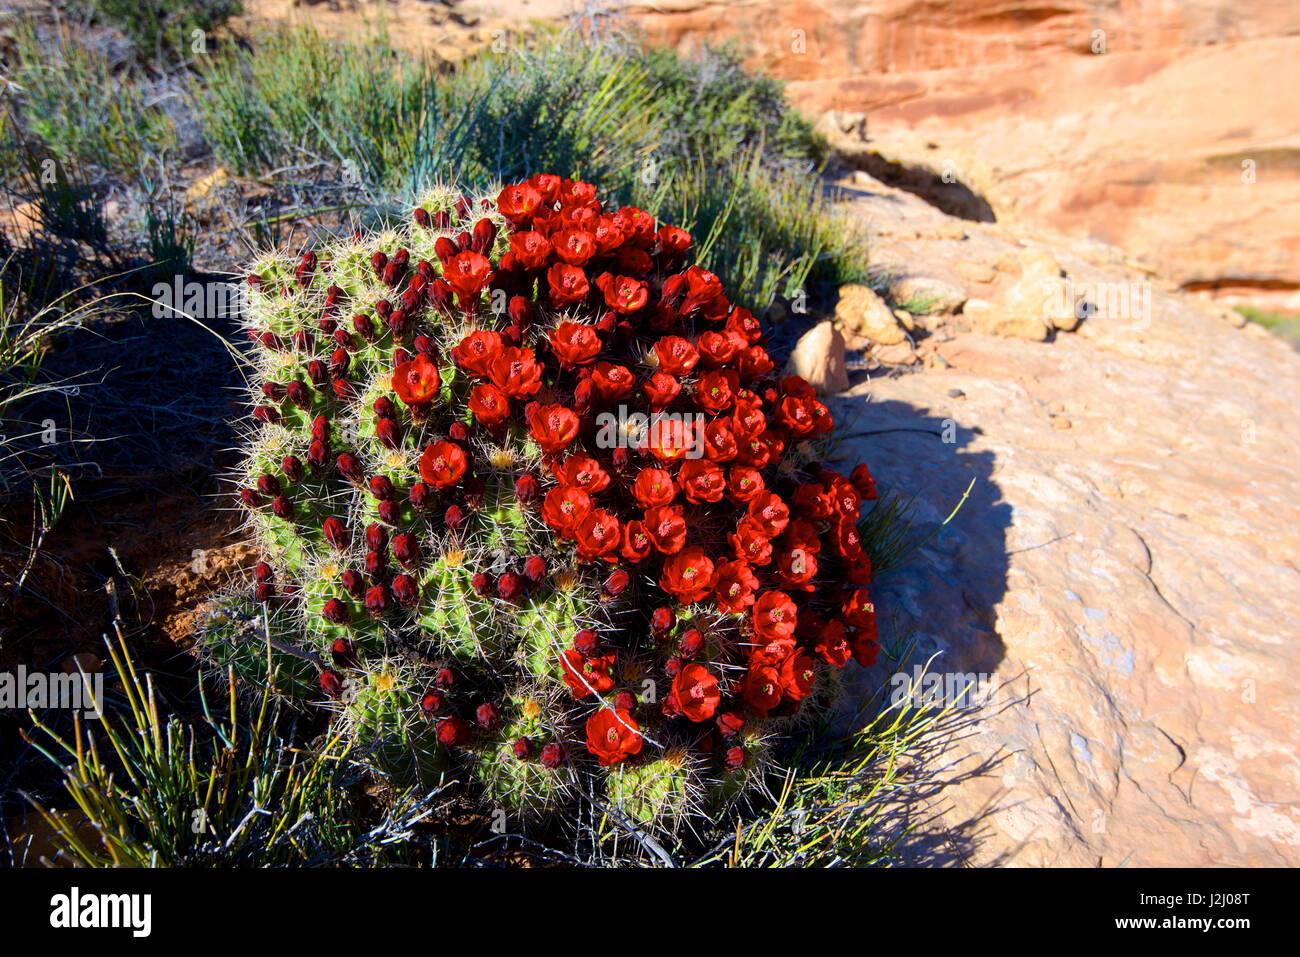 Claretcup cactus (Echinocereus triglochidiatus) in bloom. (Large format sizes available) Stock Photo